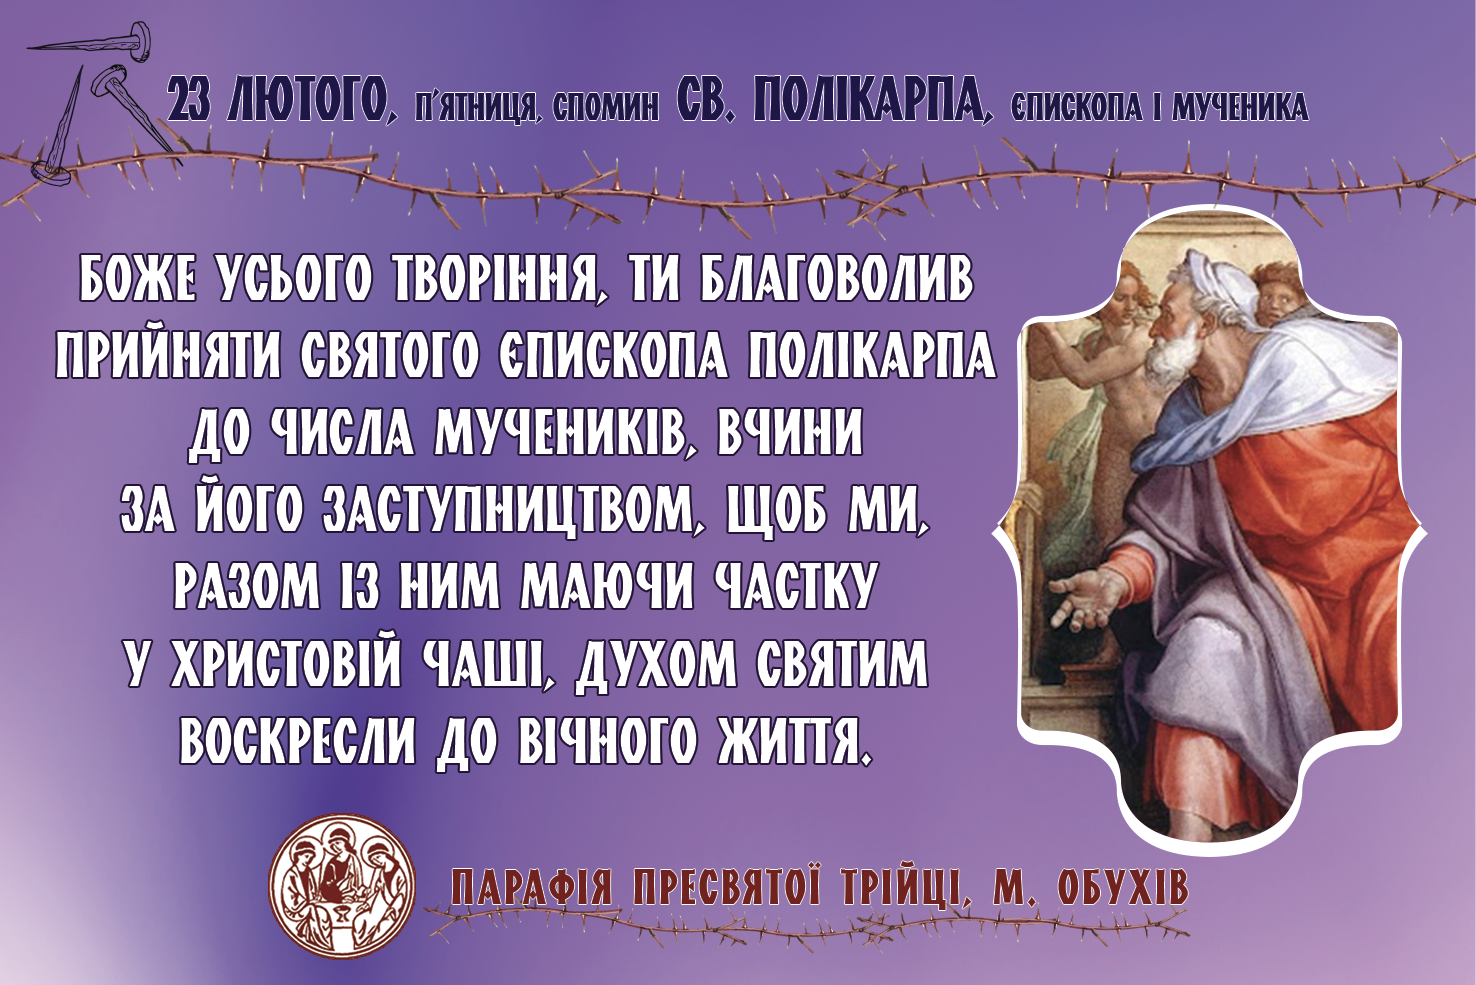 23 лютого, п’ятниця,спомин св. ПОЛІКАРПА, єпископа і мученика